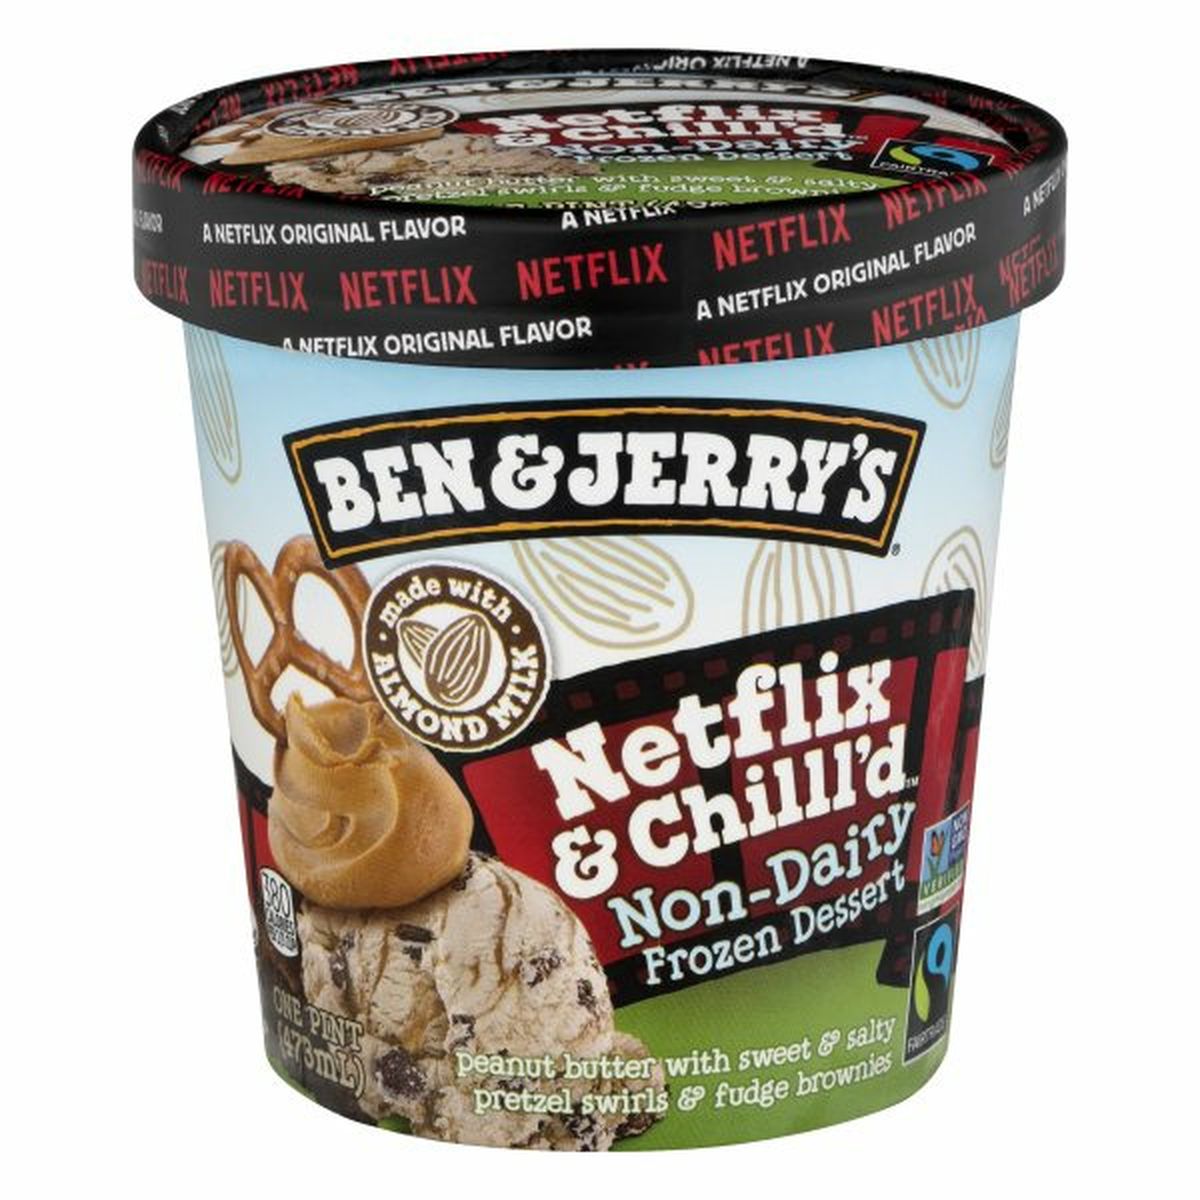 Calories in Ben & Jerry's Frozen Dessert, Non-Dairy, Netflix & Chill'd